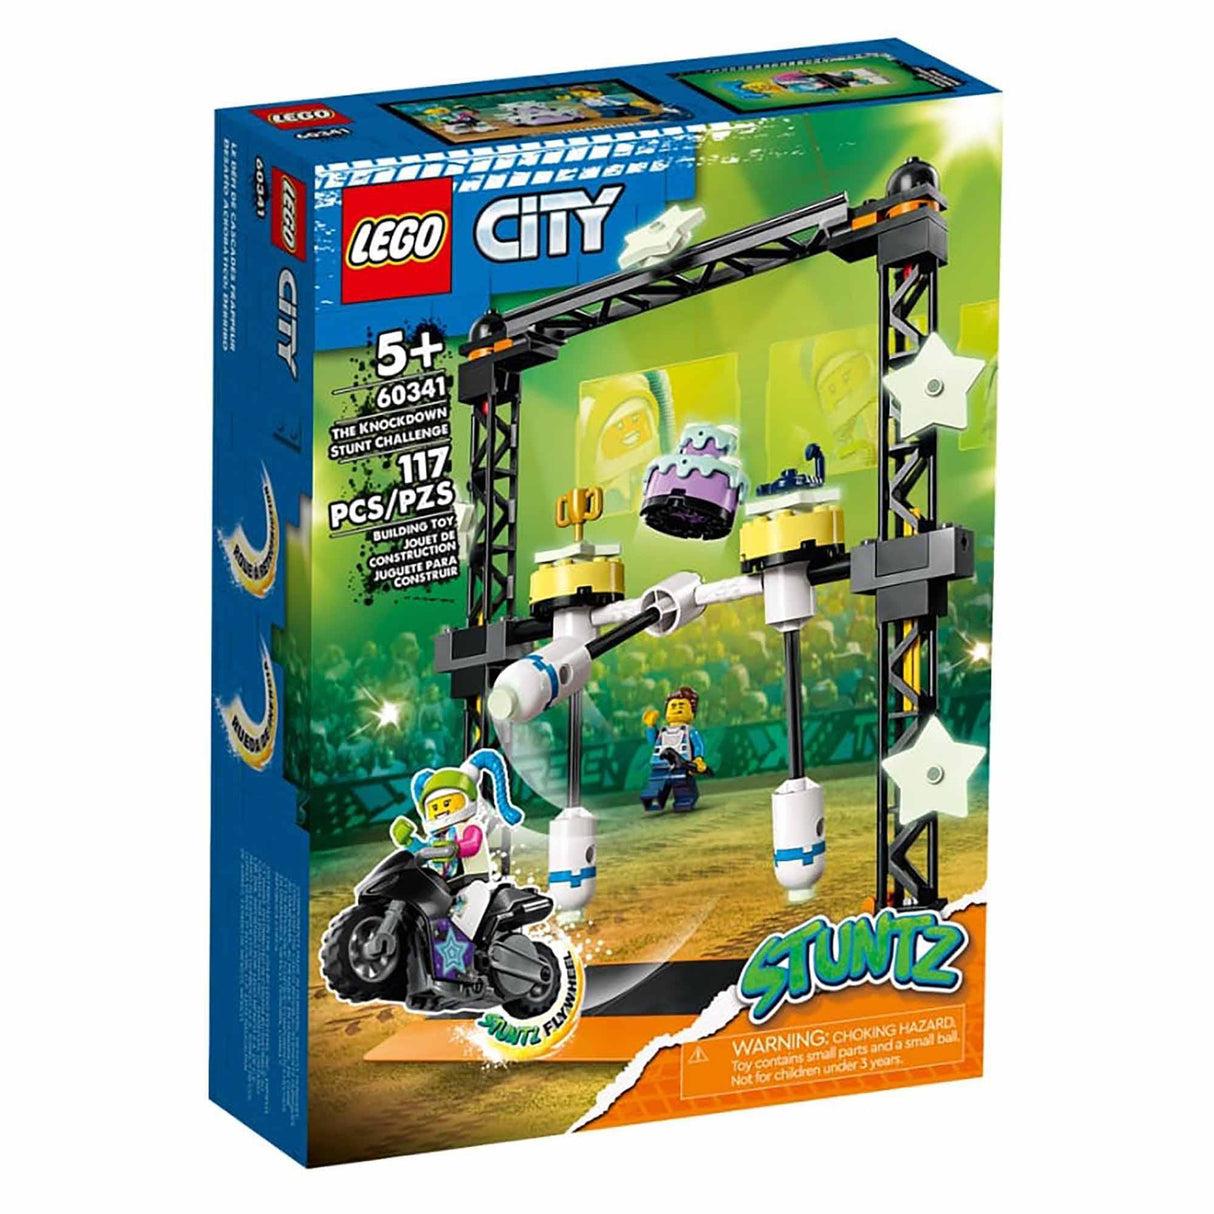 LEGO 60341 City Stuntz The Knockdown Stunt Challenge (117 pieces)